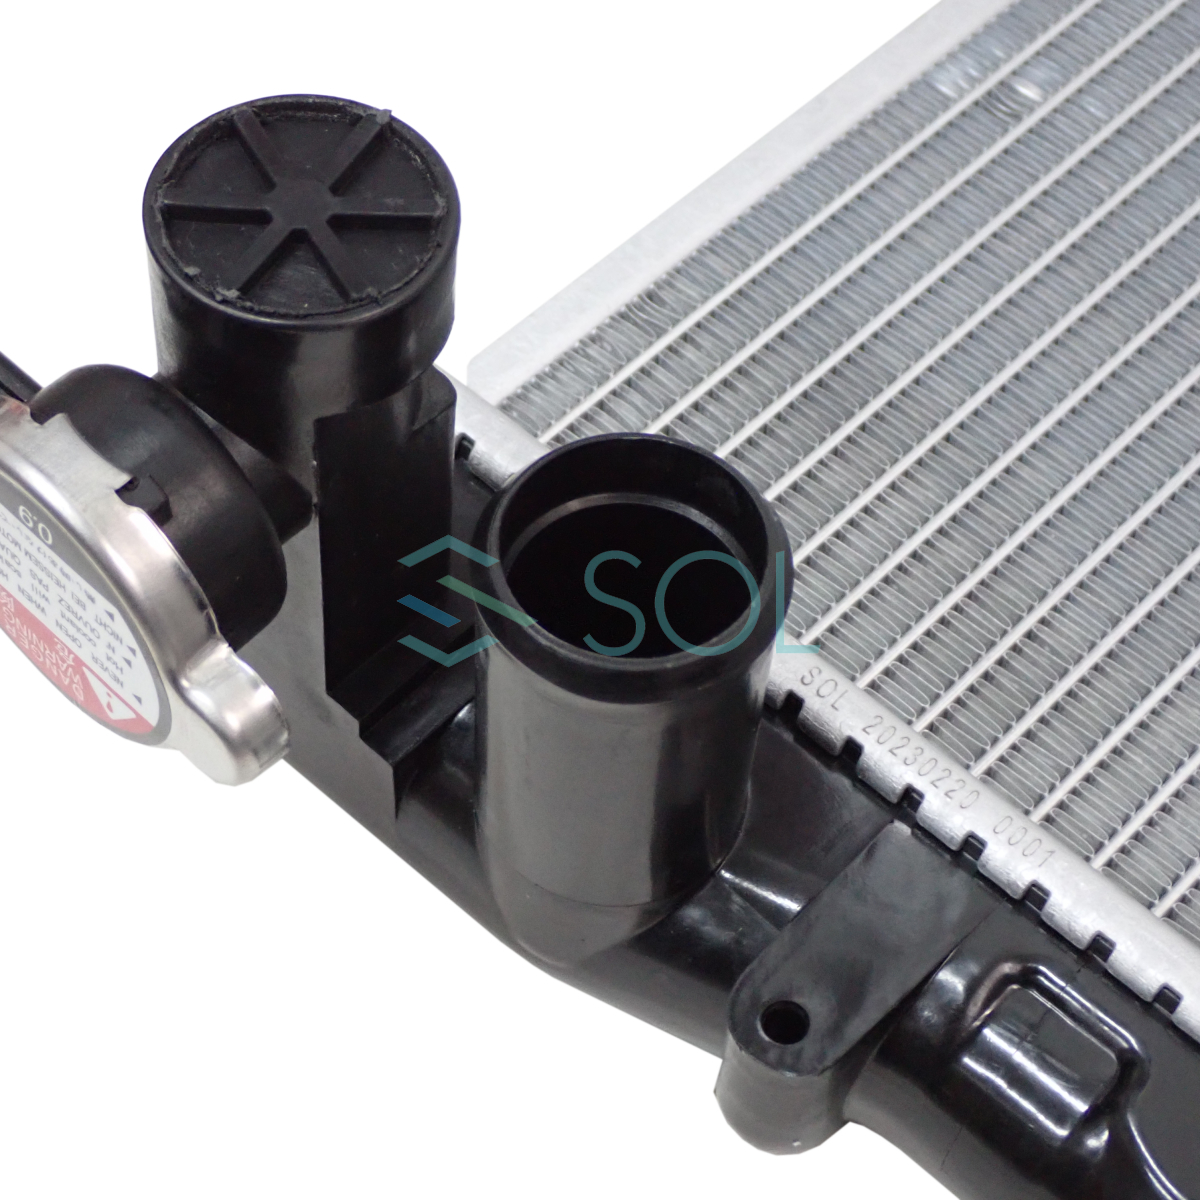  Lucino FNN15 радиатор крышка радиатора есть AT машина CVT машина 21460-0M001 21450-0M001 21450-2M300 18 часов до в тот же день отгрузка 